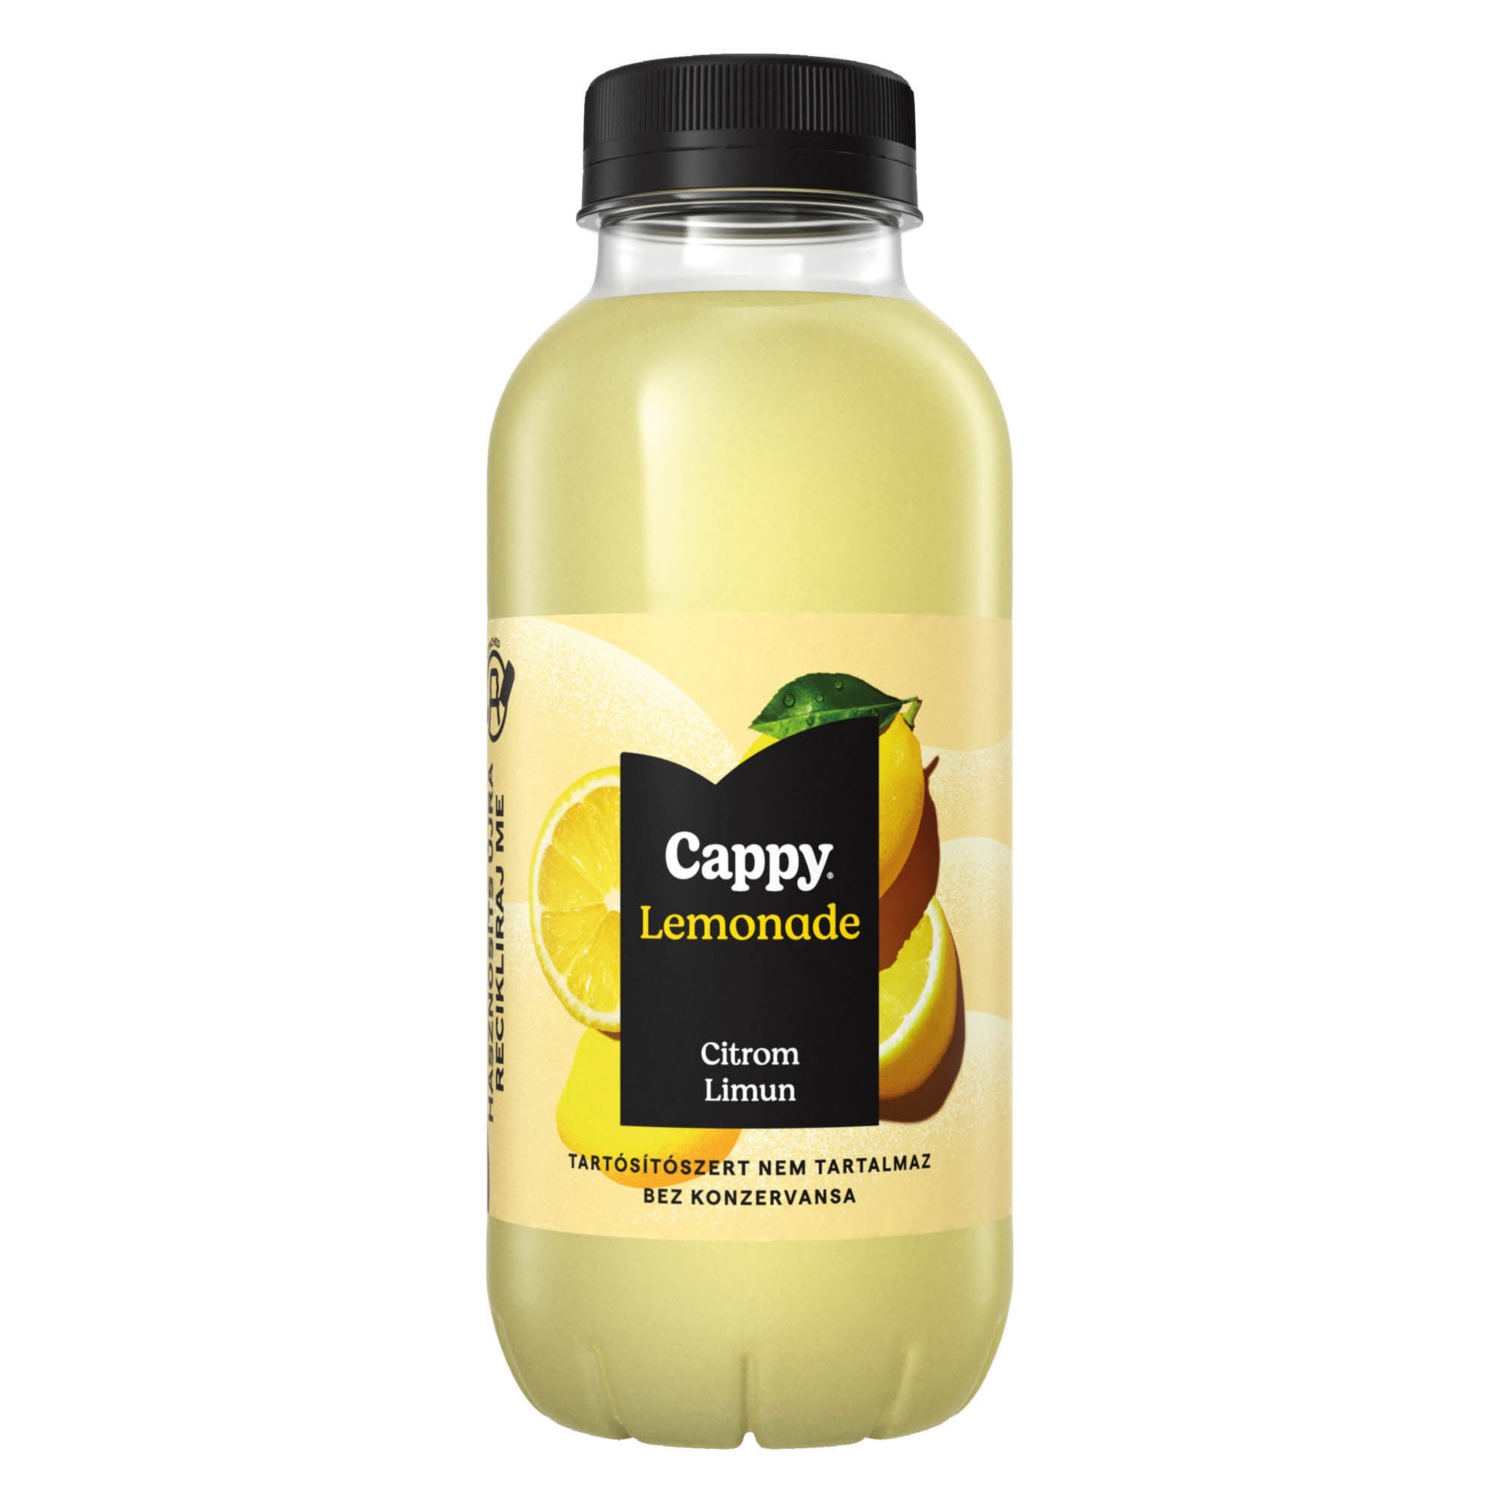 CAPPY Limonádé, 0,4 l, citrom